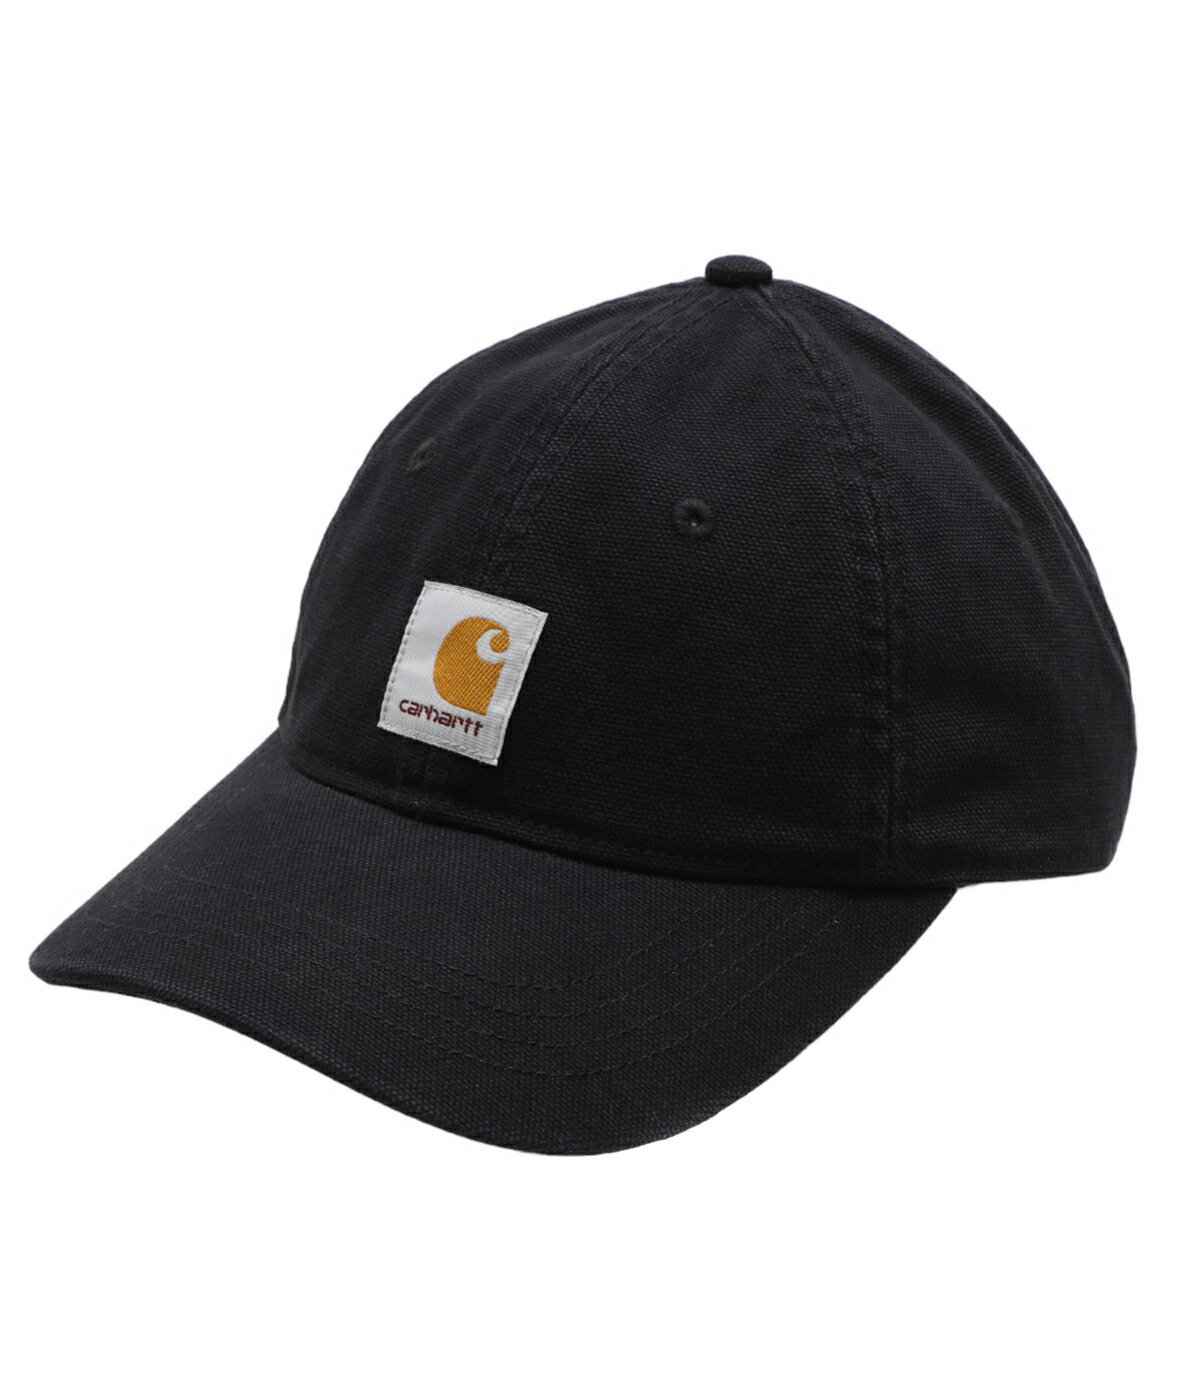 カーハート Carhartt WIP / カーハート ワークインプログレス : DUNES CAP / 全3色 : キャップ デューンスキャップ C ロゴ スクエアラベル ガーメントダイ 帽子 コットン メンズ : I031621【NOA】